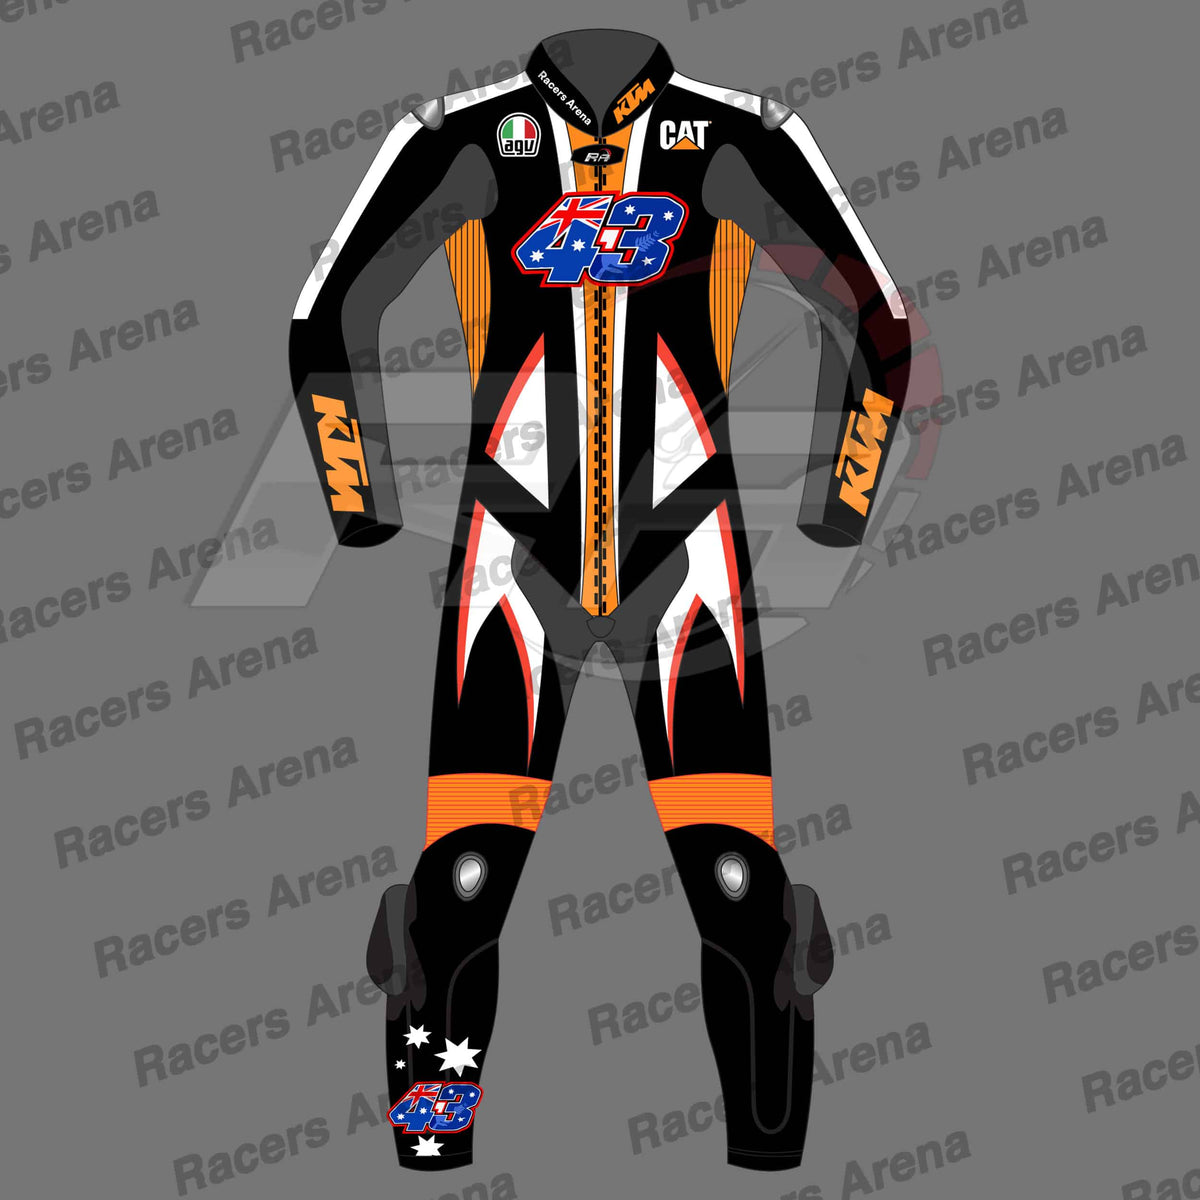 jack-miller-ktm-winter-test-2022-race-suit front